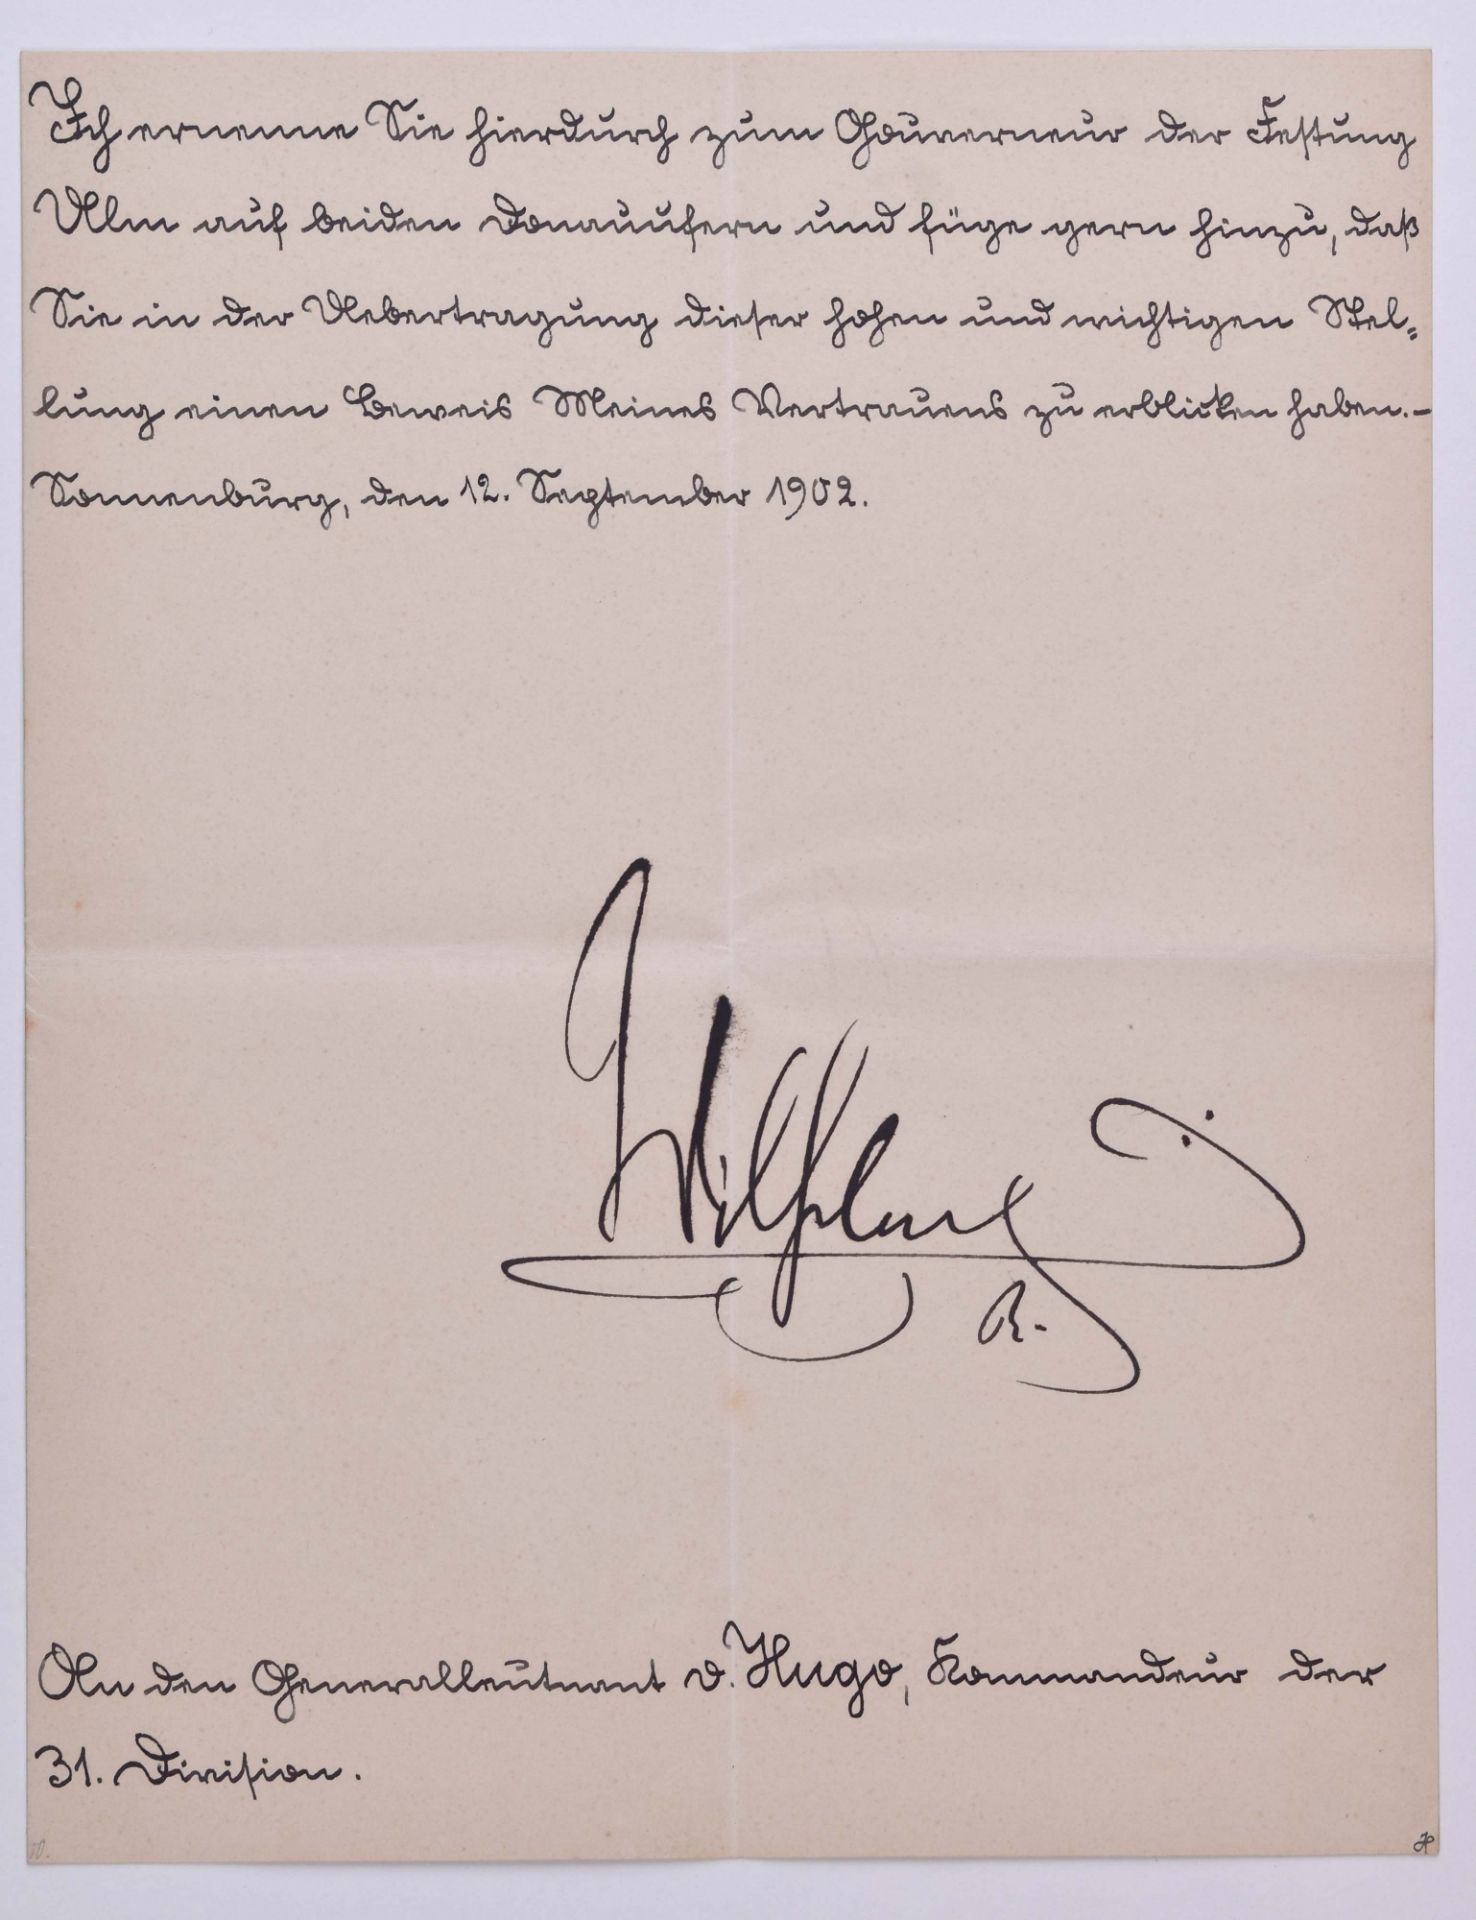 Ernennung zum Kommandeur der Festung Ulm 12.9.1902Ernennung zum Kommandeur der Festung Ulm für